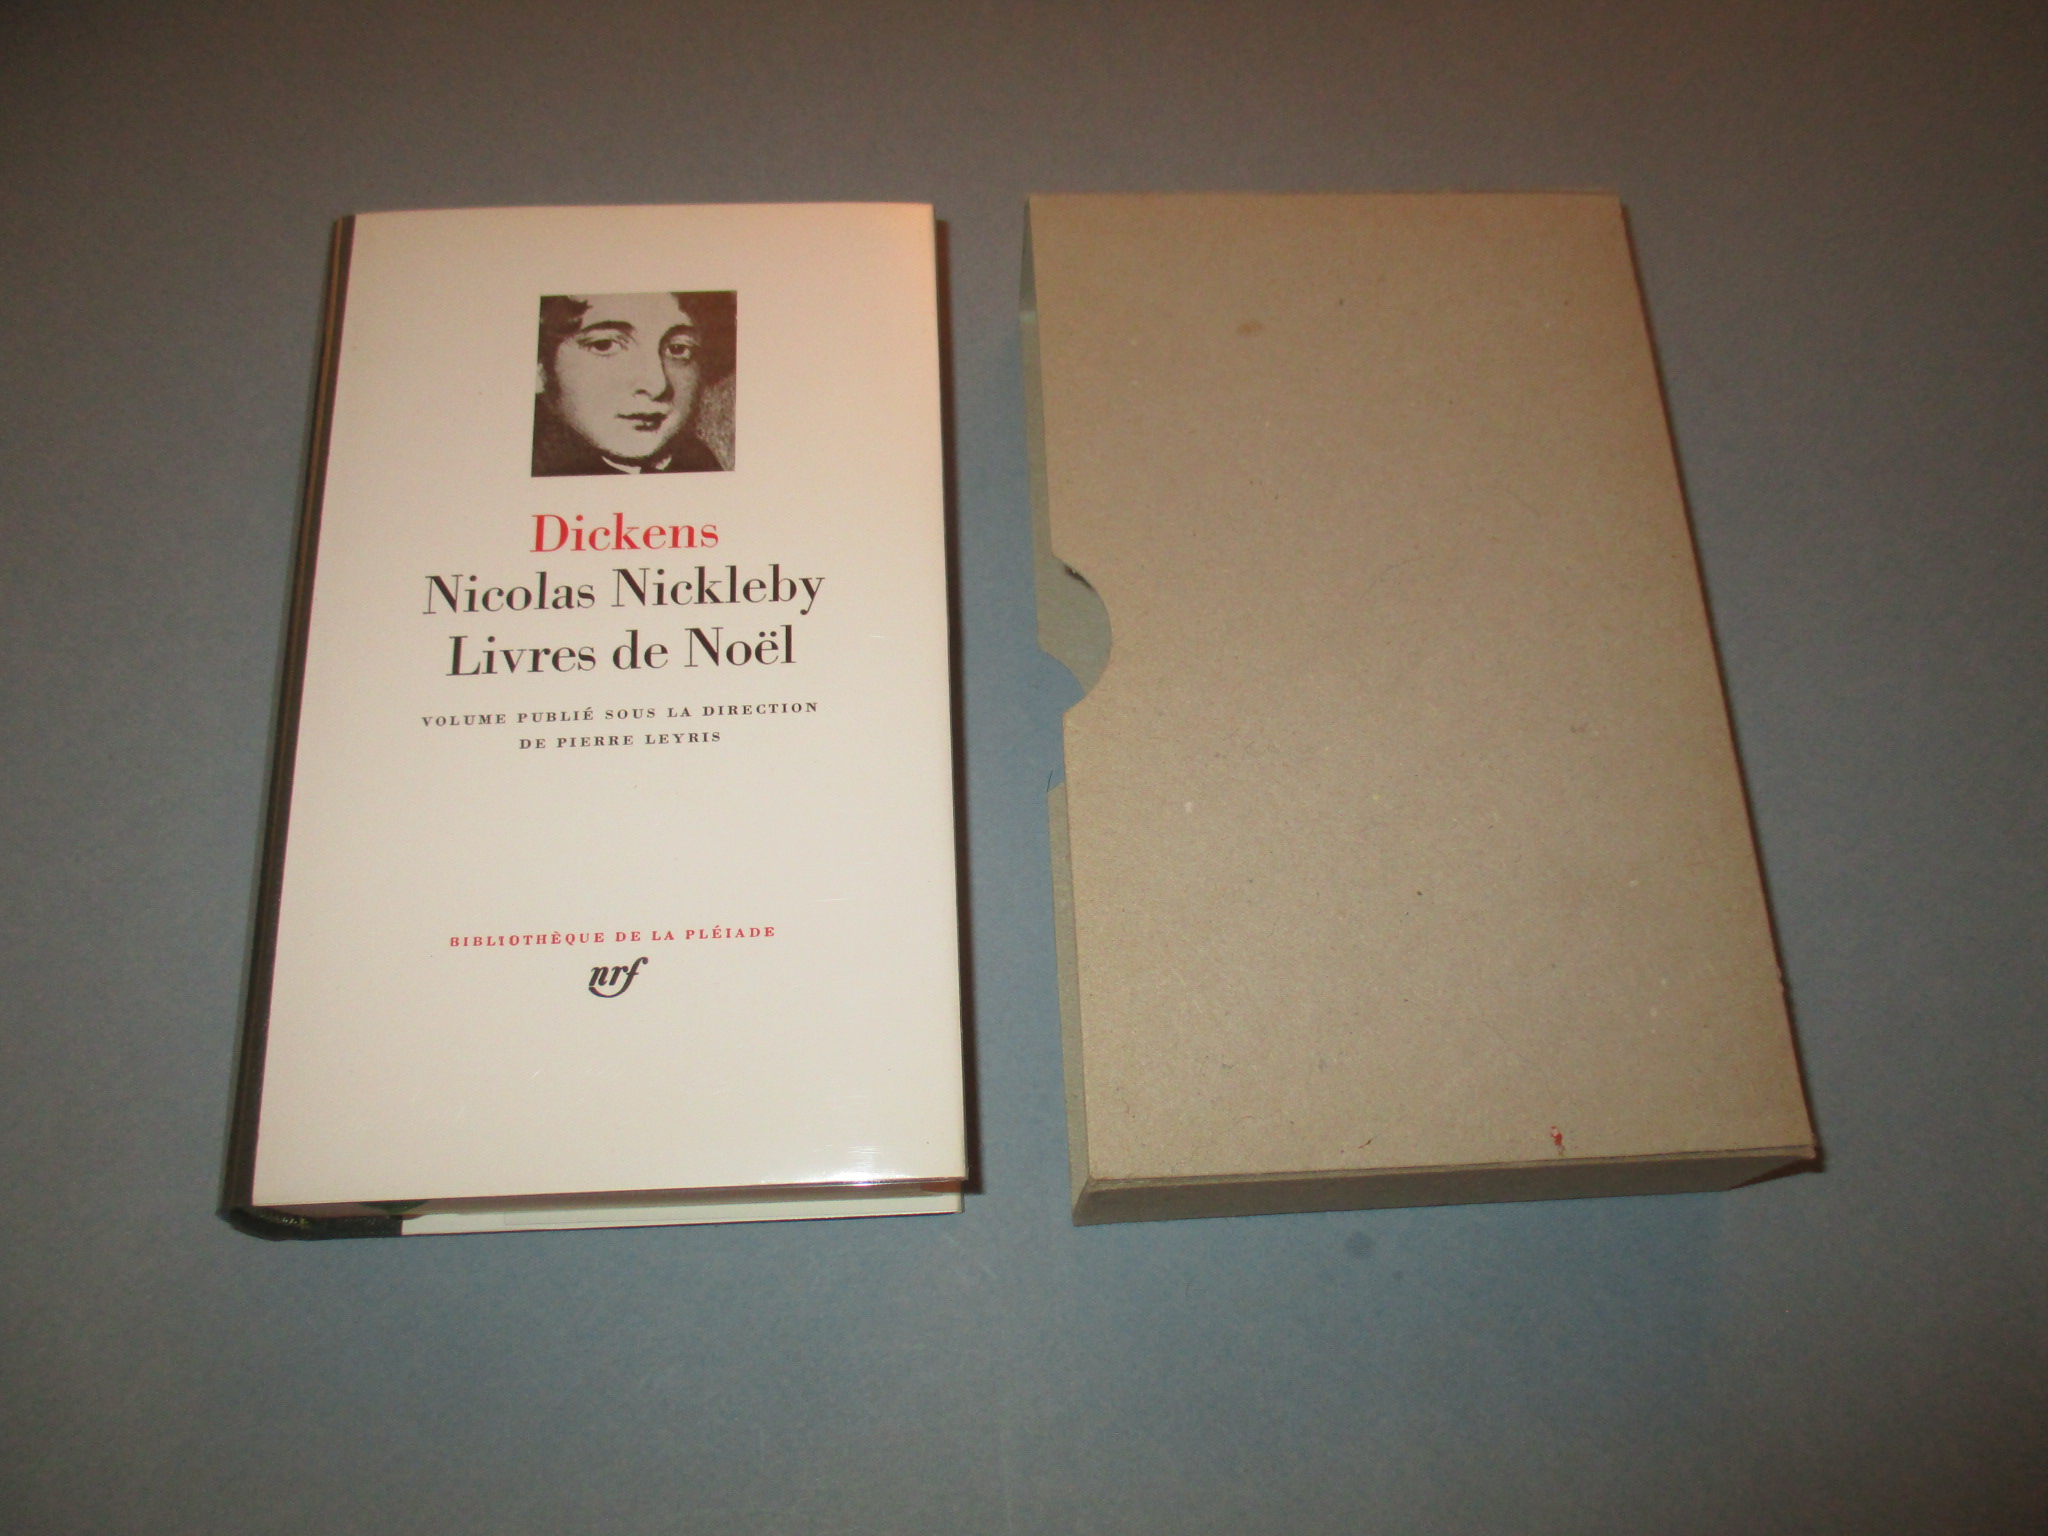 Nicolas Nickleby et Livres de Noël, Dickens, La Pléiade 1979